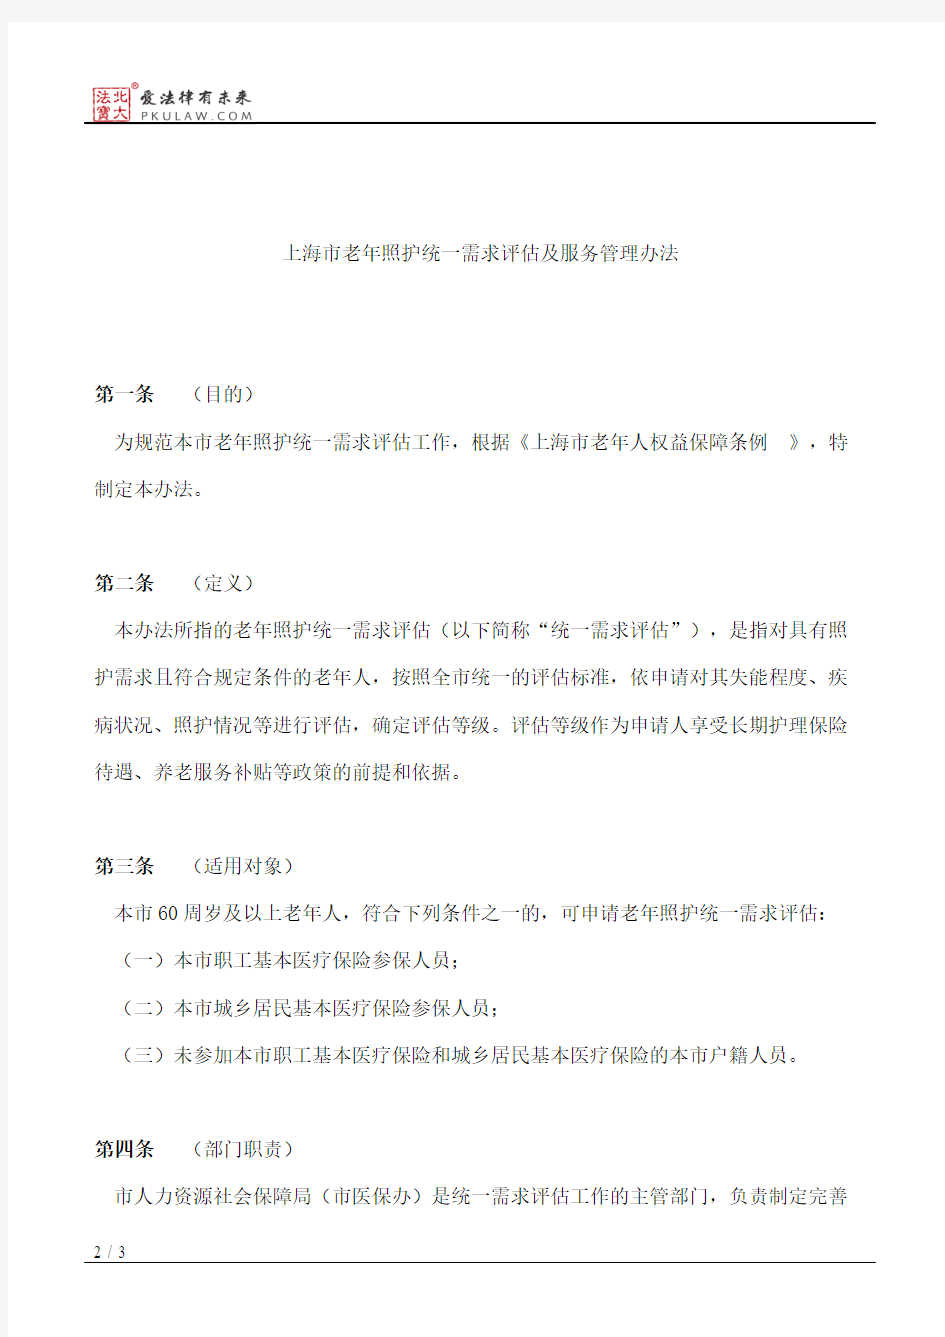 上海市人民政府办公厅关于印发《上海市老年照护统一需求评估及服